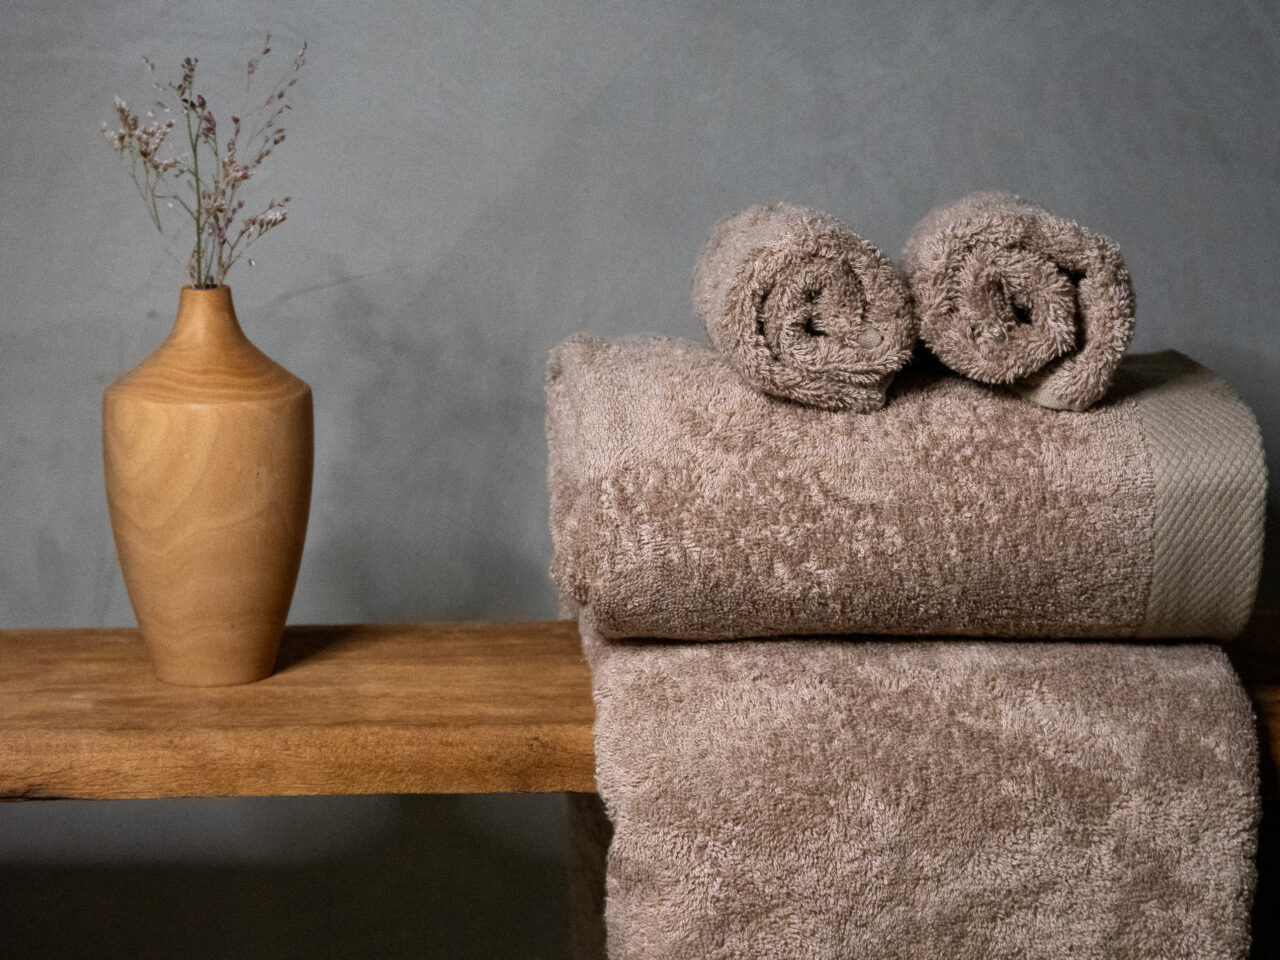 Serviettes de bain en fibre de bambou, douces et luxueuses, parfaites pour une expérience de bien-être dans votre oasis de luxe.